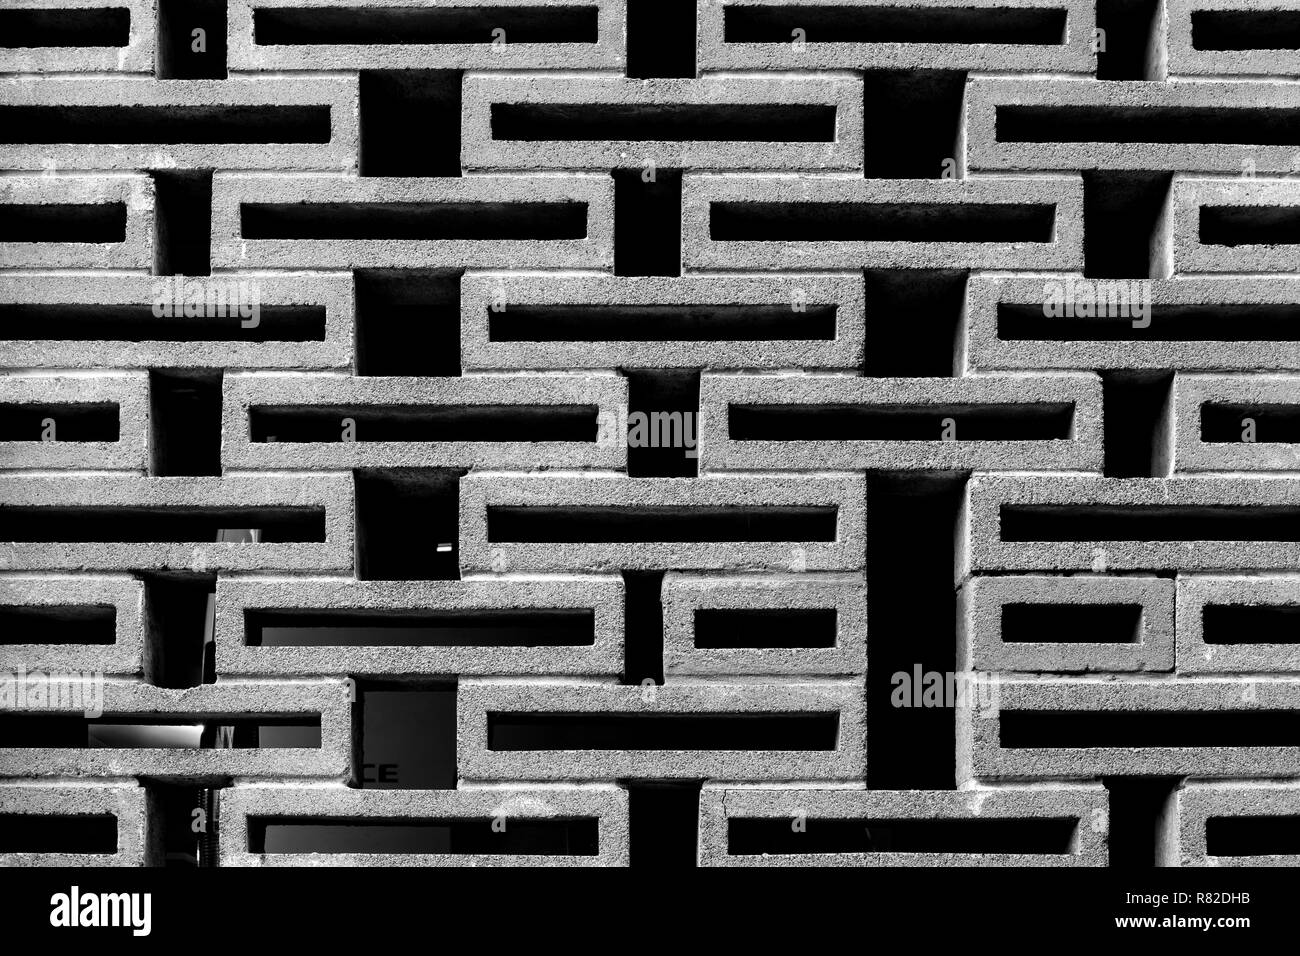 Brick wall pattern Stock Photo